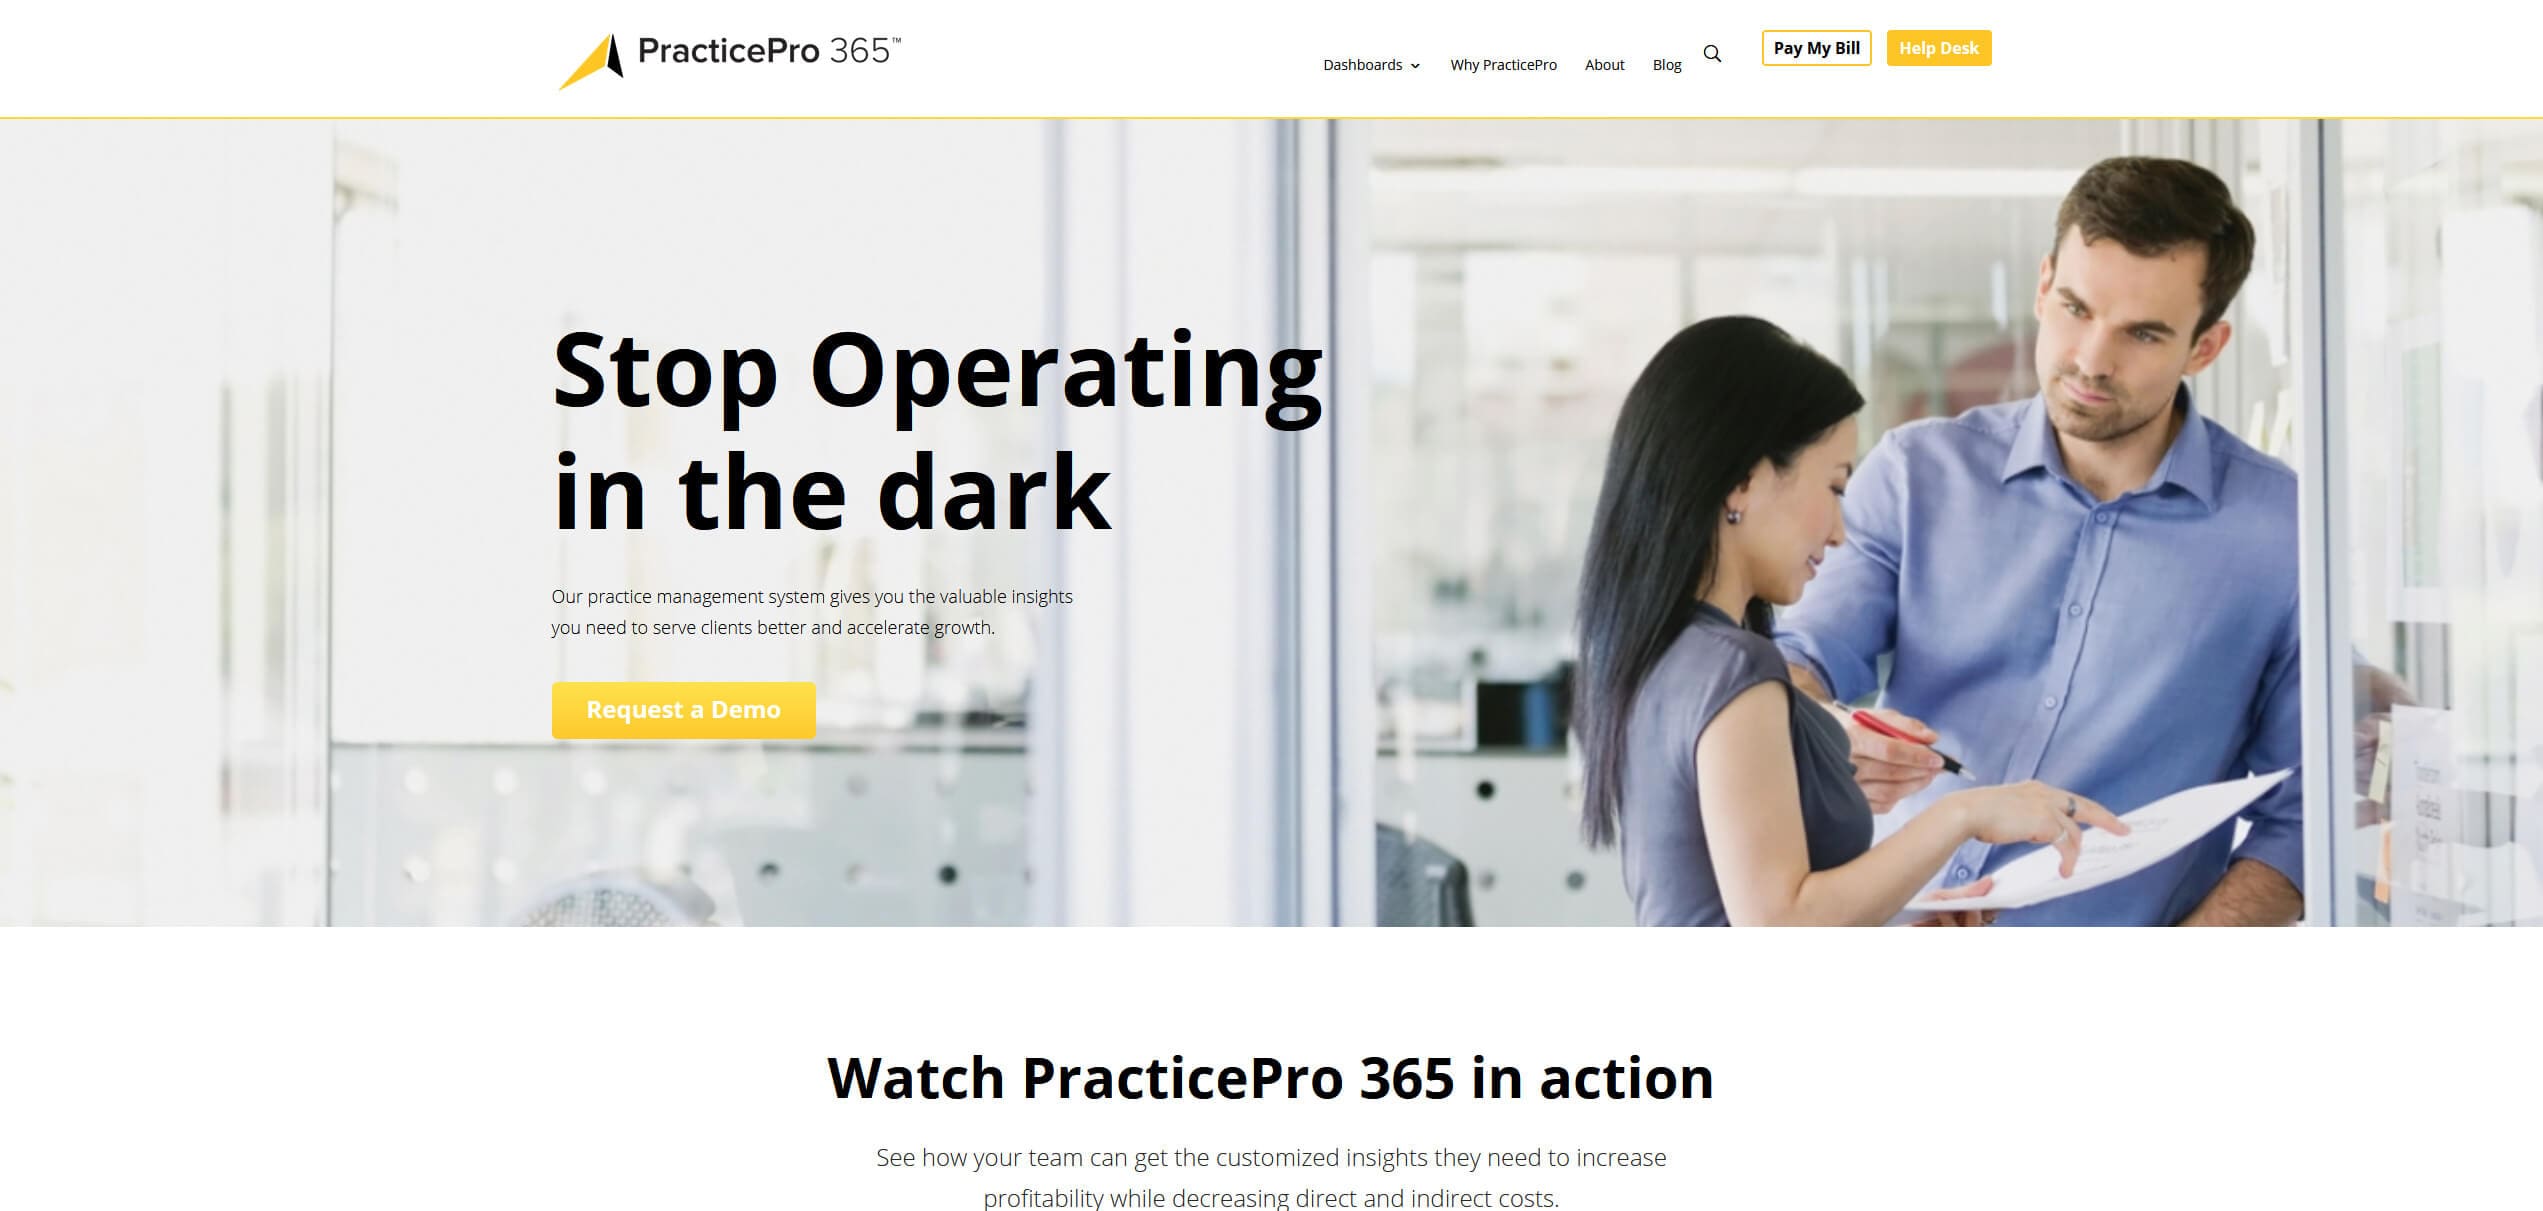 PracticePro 365 Website Design